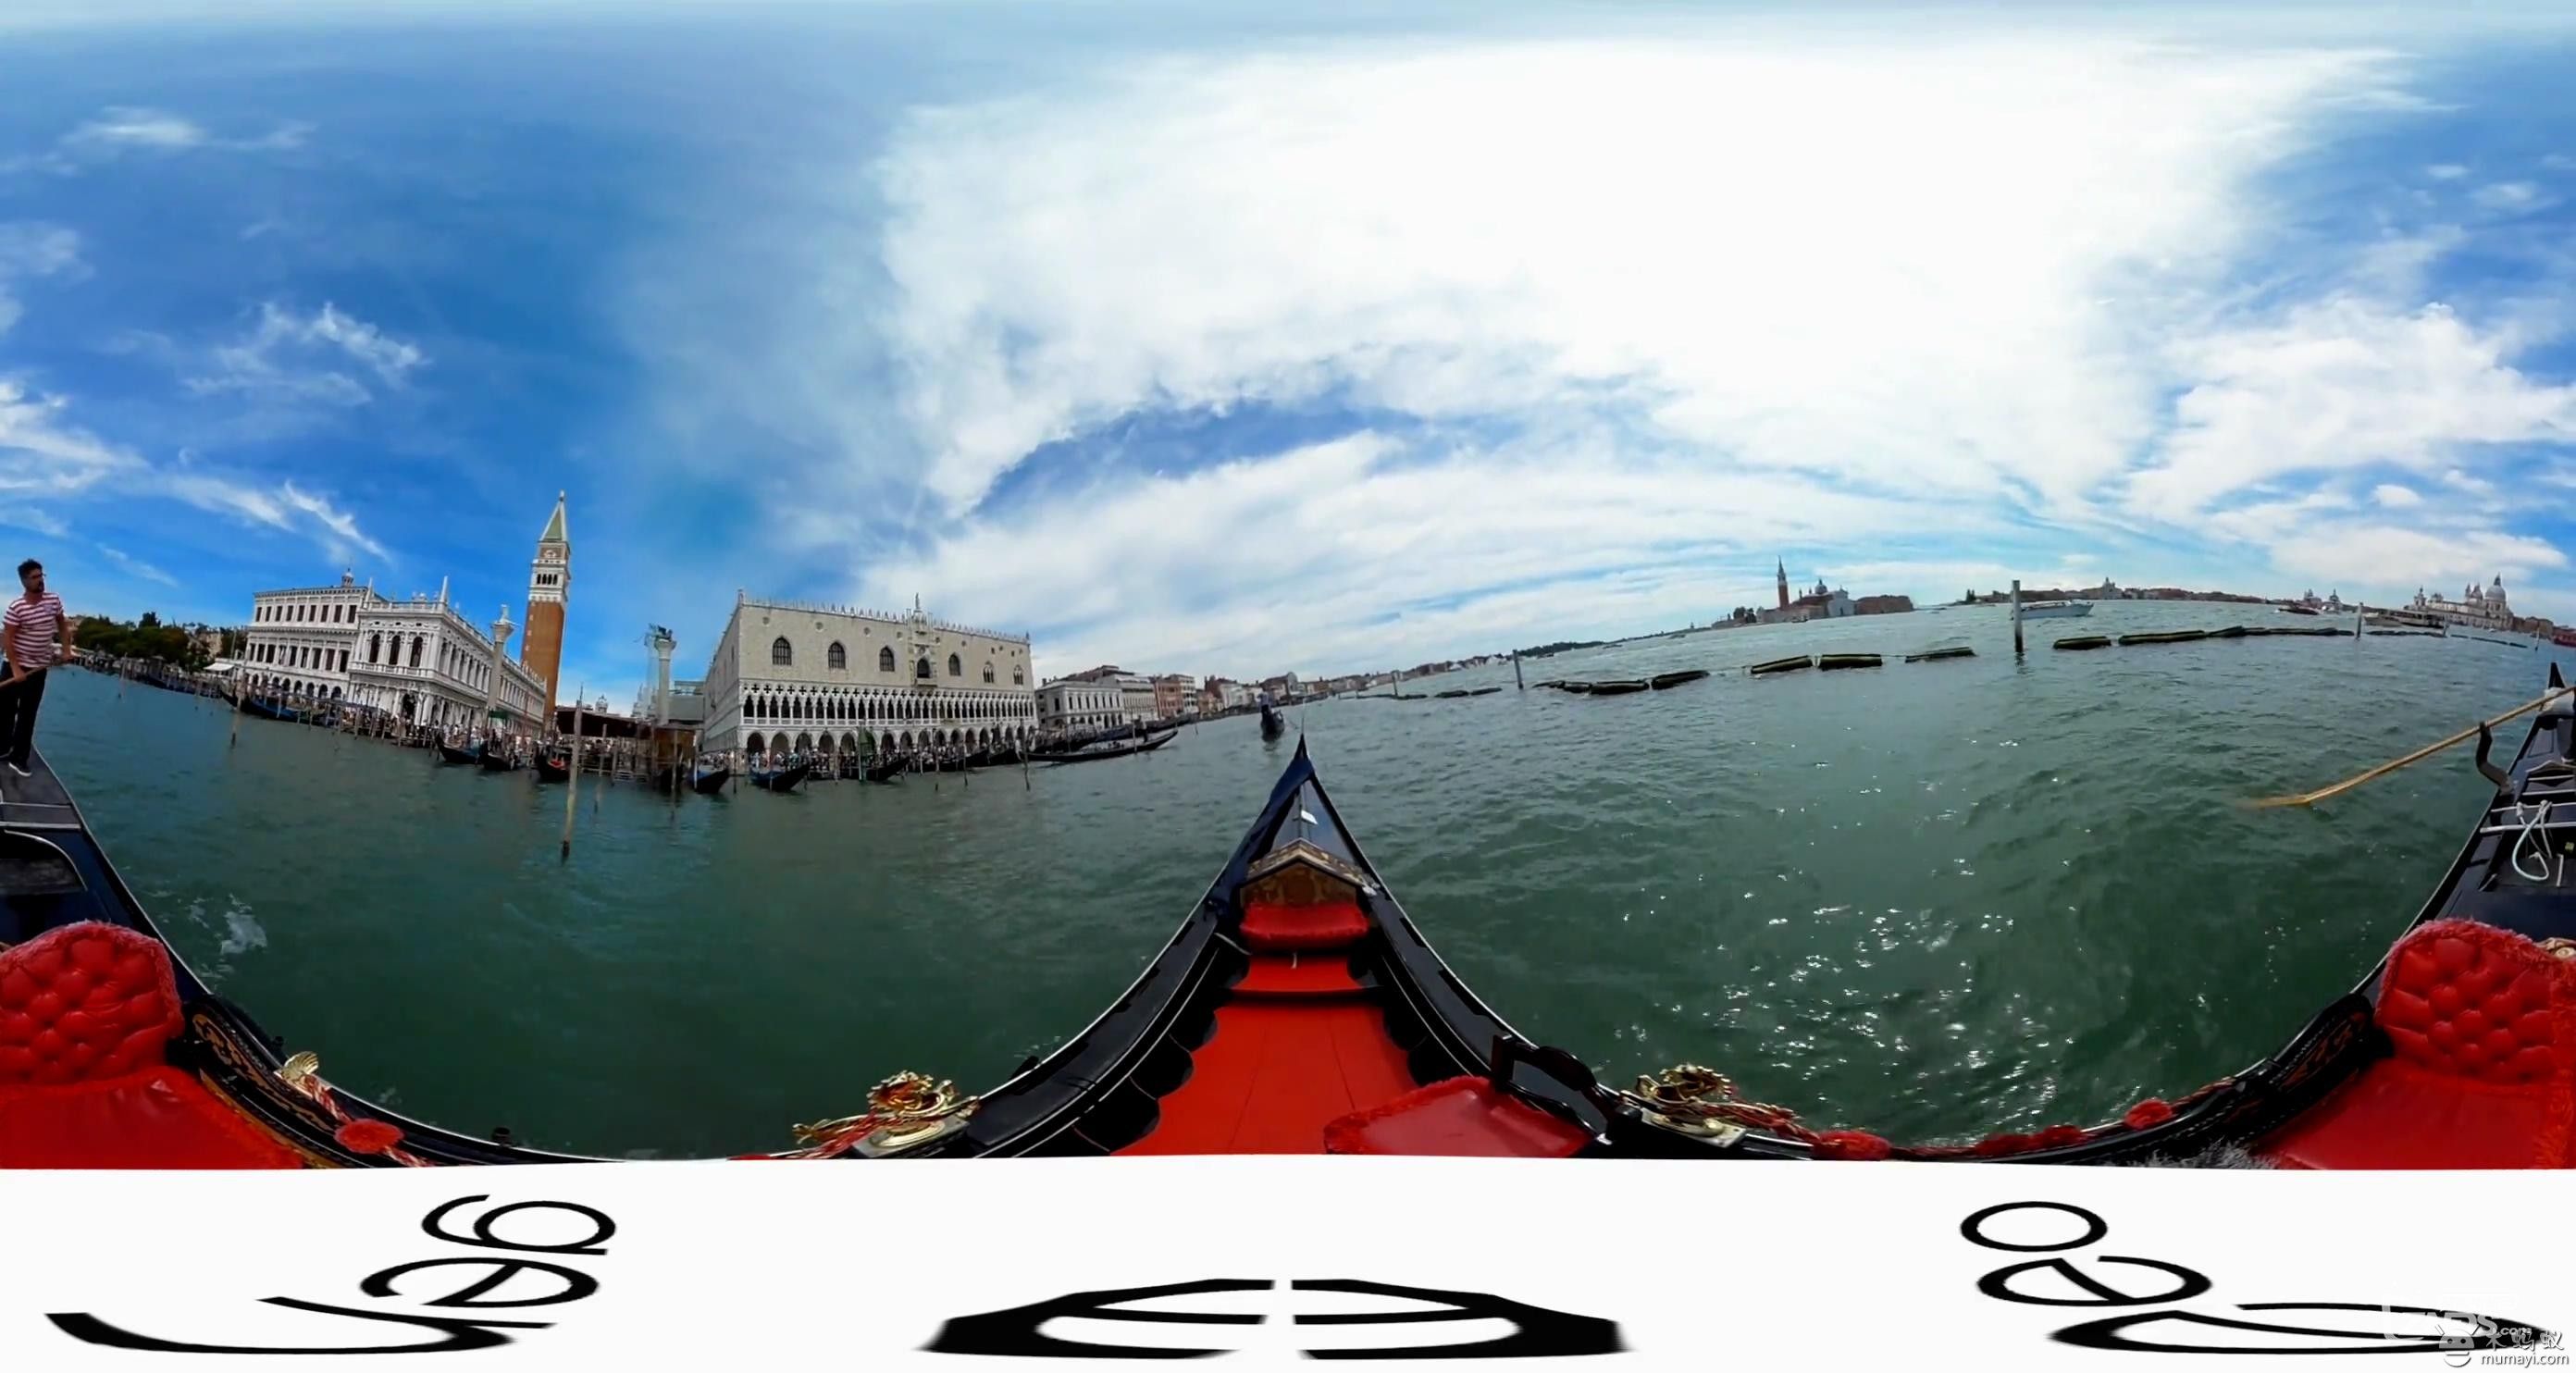 虚拟现实视频:VR游览水城威尼斯